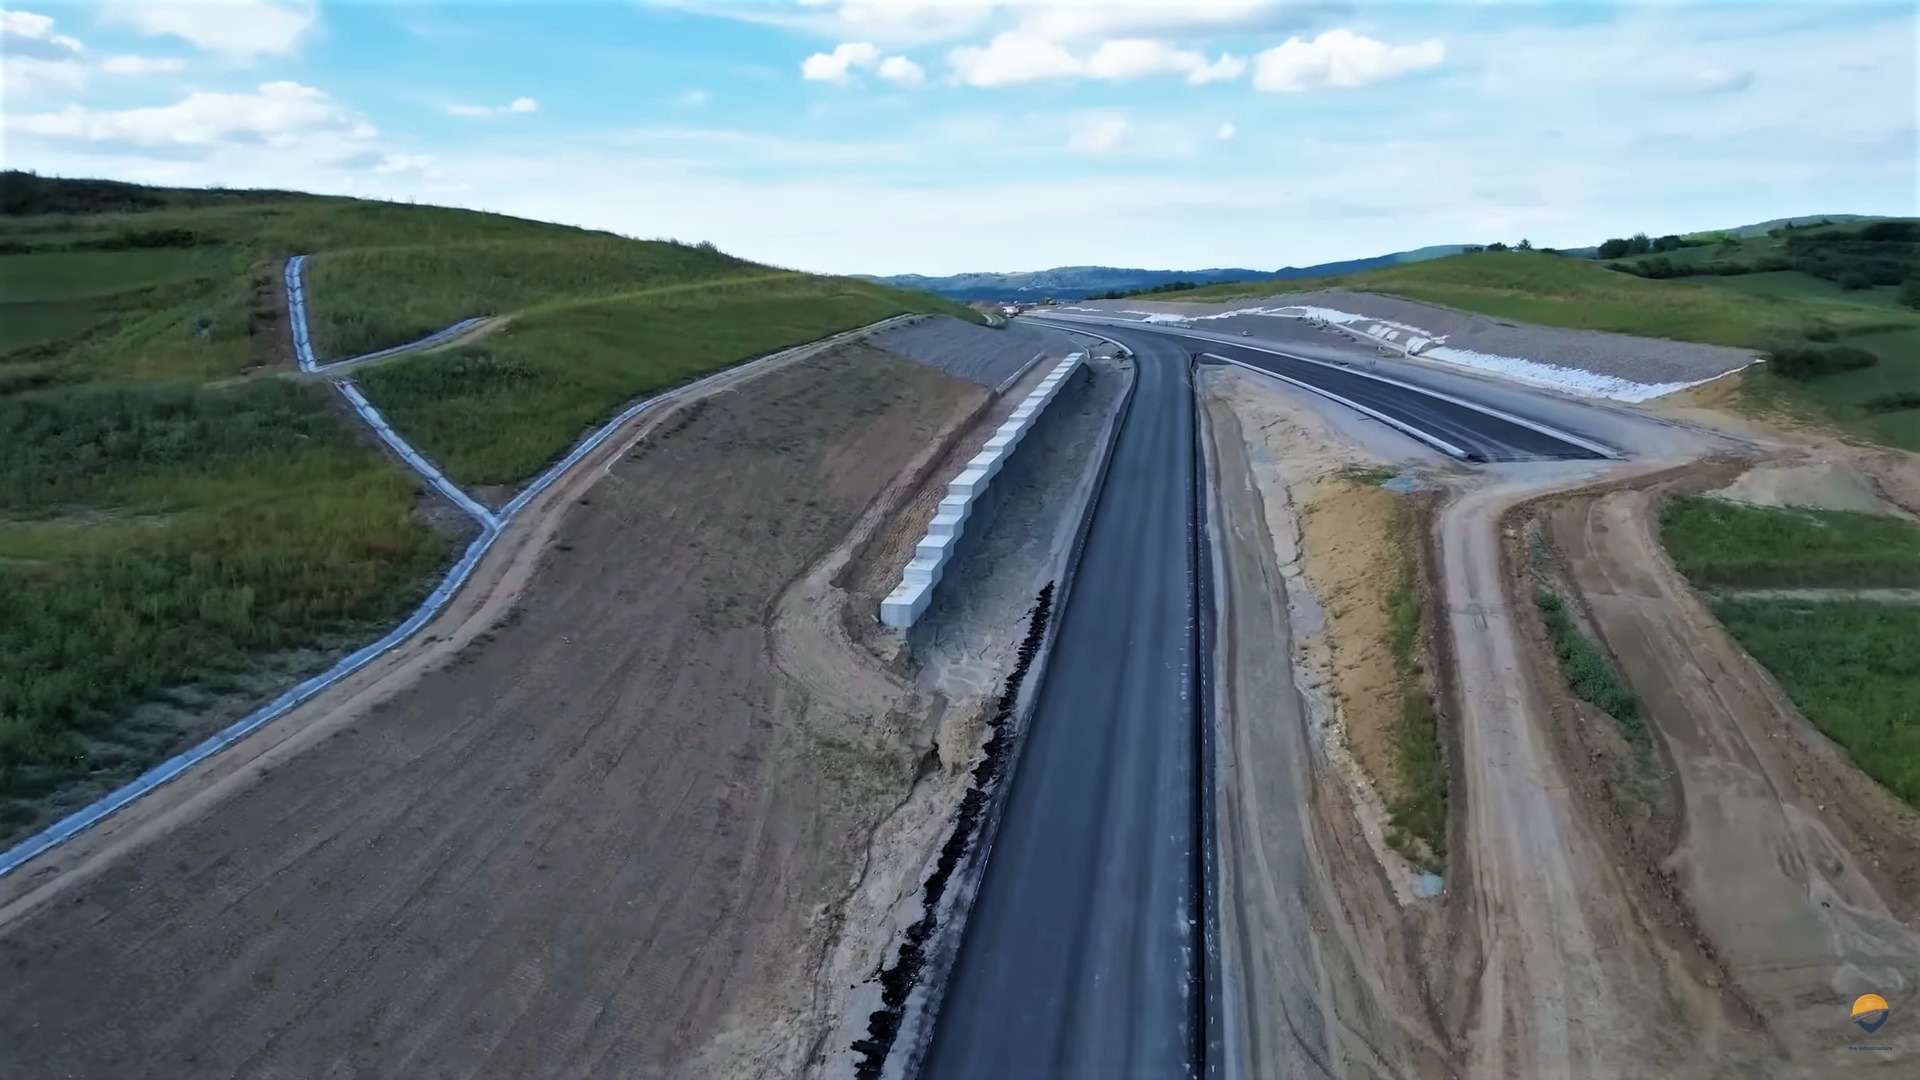 Asociaţia Pro Infrastructură: Autostrada A1 Sibiu-Boiţa probabil va fi deschisă în decembrie / Stadiul fizic al lucrărilor – 80% / Cei 13,17 km sunt singurii kilometri de autostradă care vor fi daţi în trafic în acest an